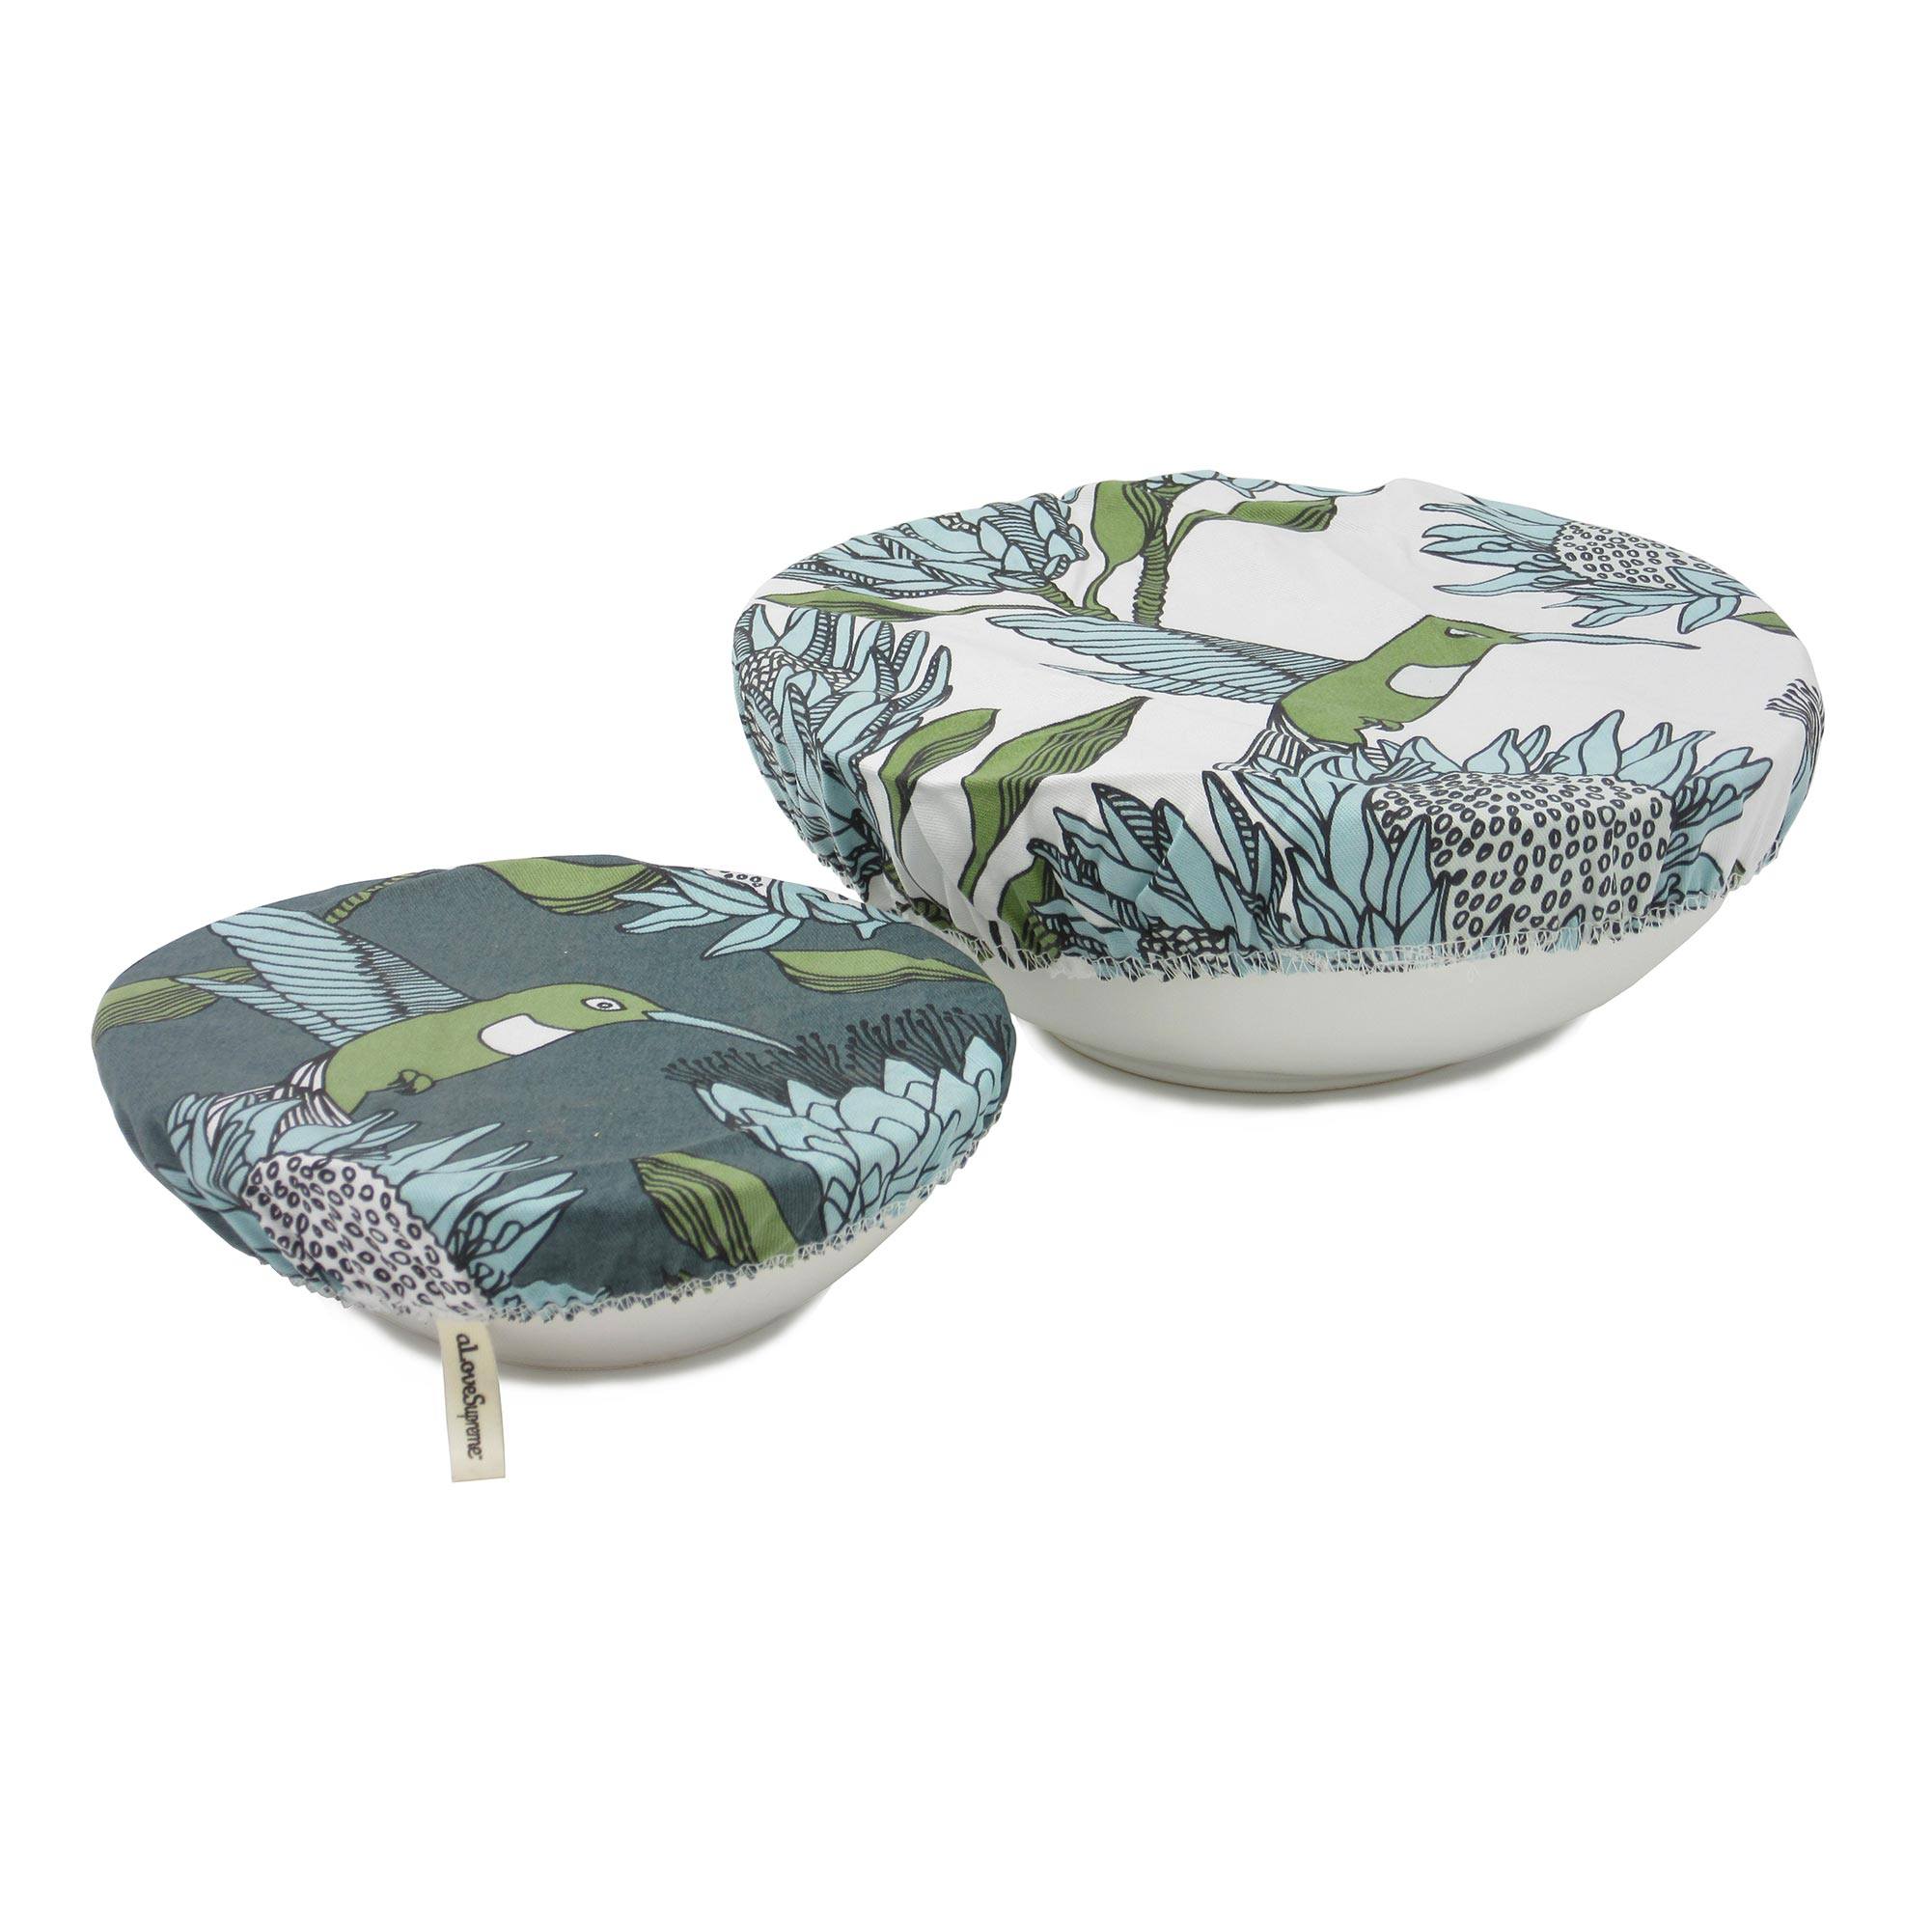 aLoveSupreme Cotton Dish & Bowl Covers with Proteas home & decor aLoveSupreme